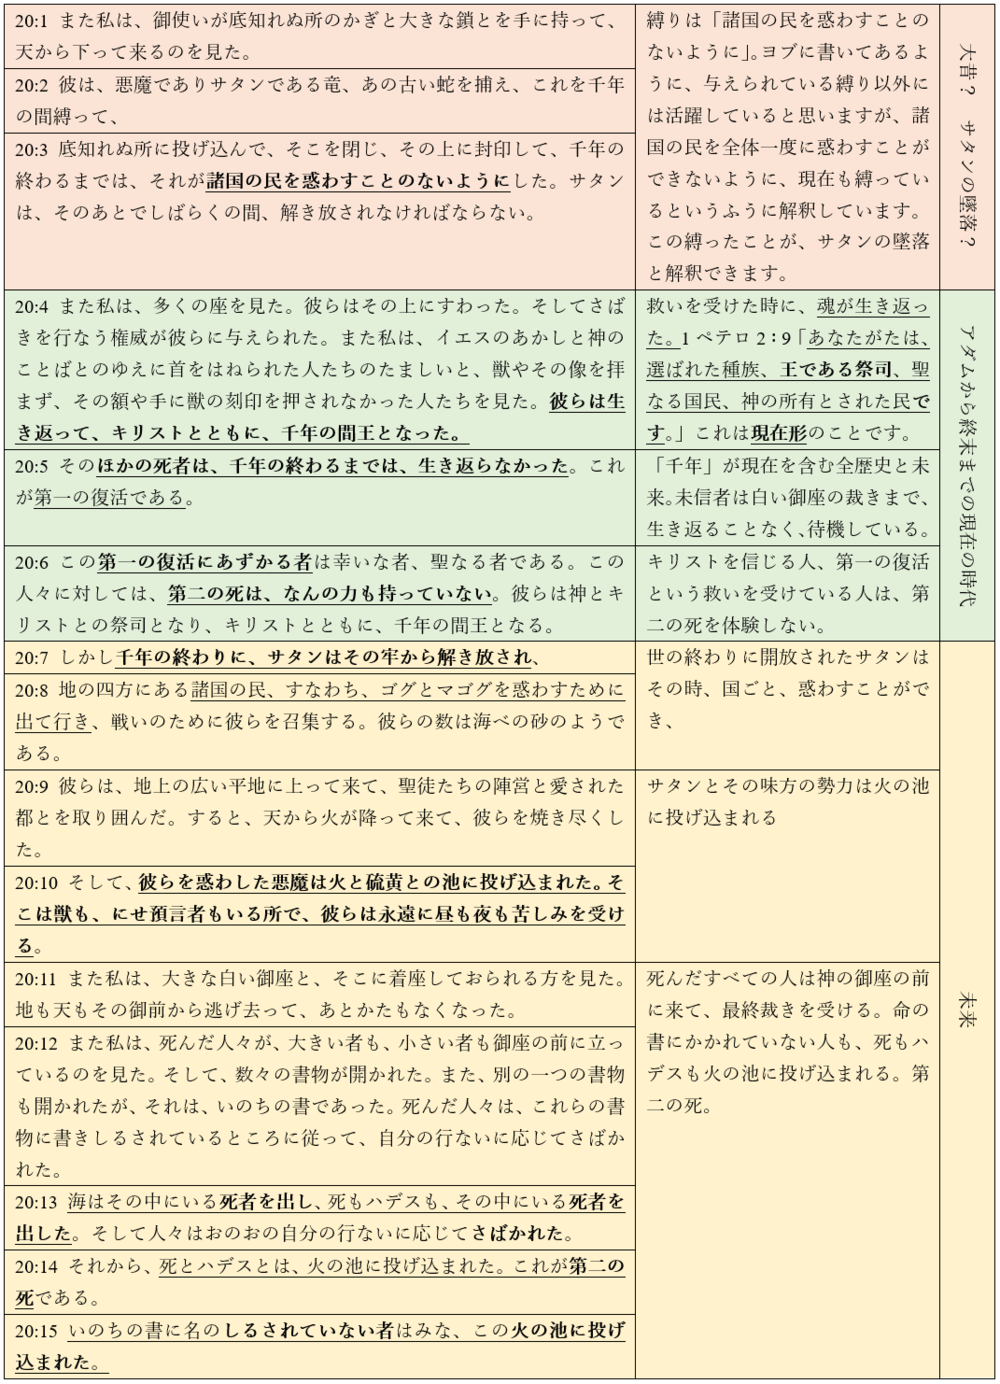 東京神学校 — Updates・新着情報 — Chris Michael Moore